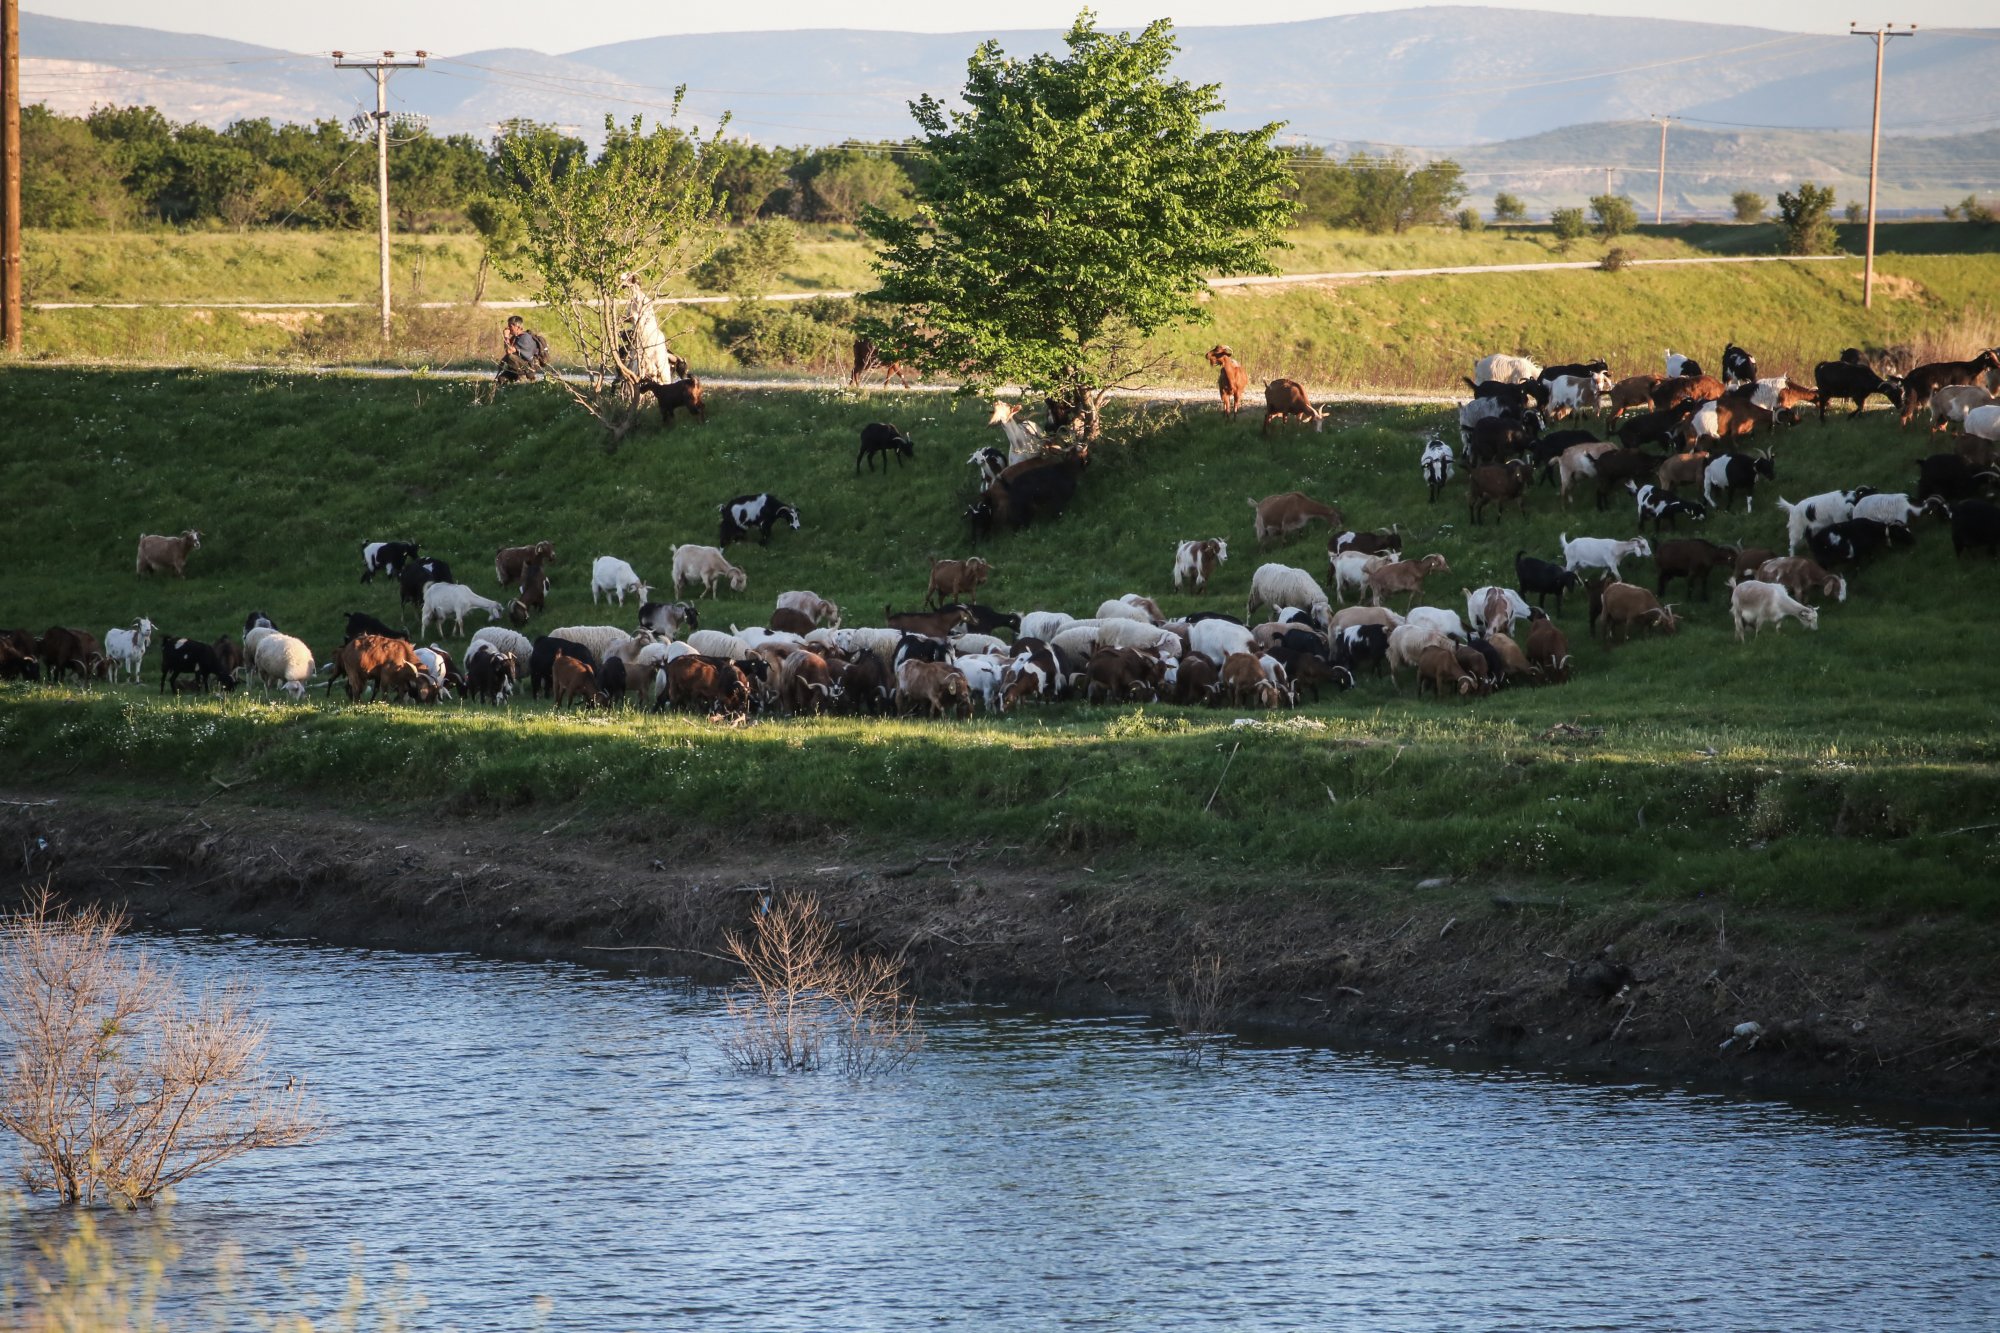 Πανώλη: Νέο κρούσμα σε αιγοπρόβατα στη Λάρισα - «Απειλείται το ζωικό κεφάλαιο της Περιφέρειας»